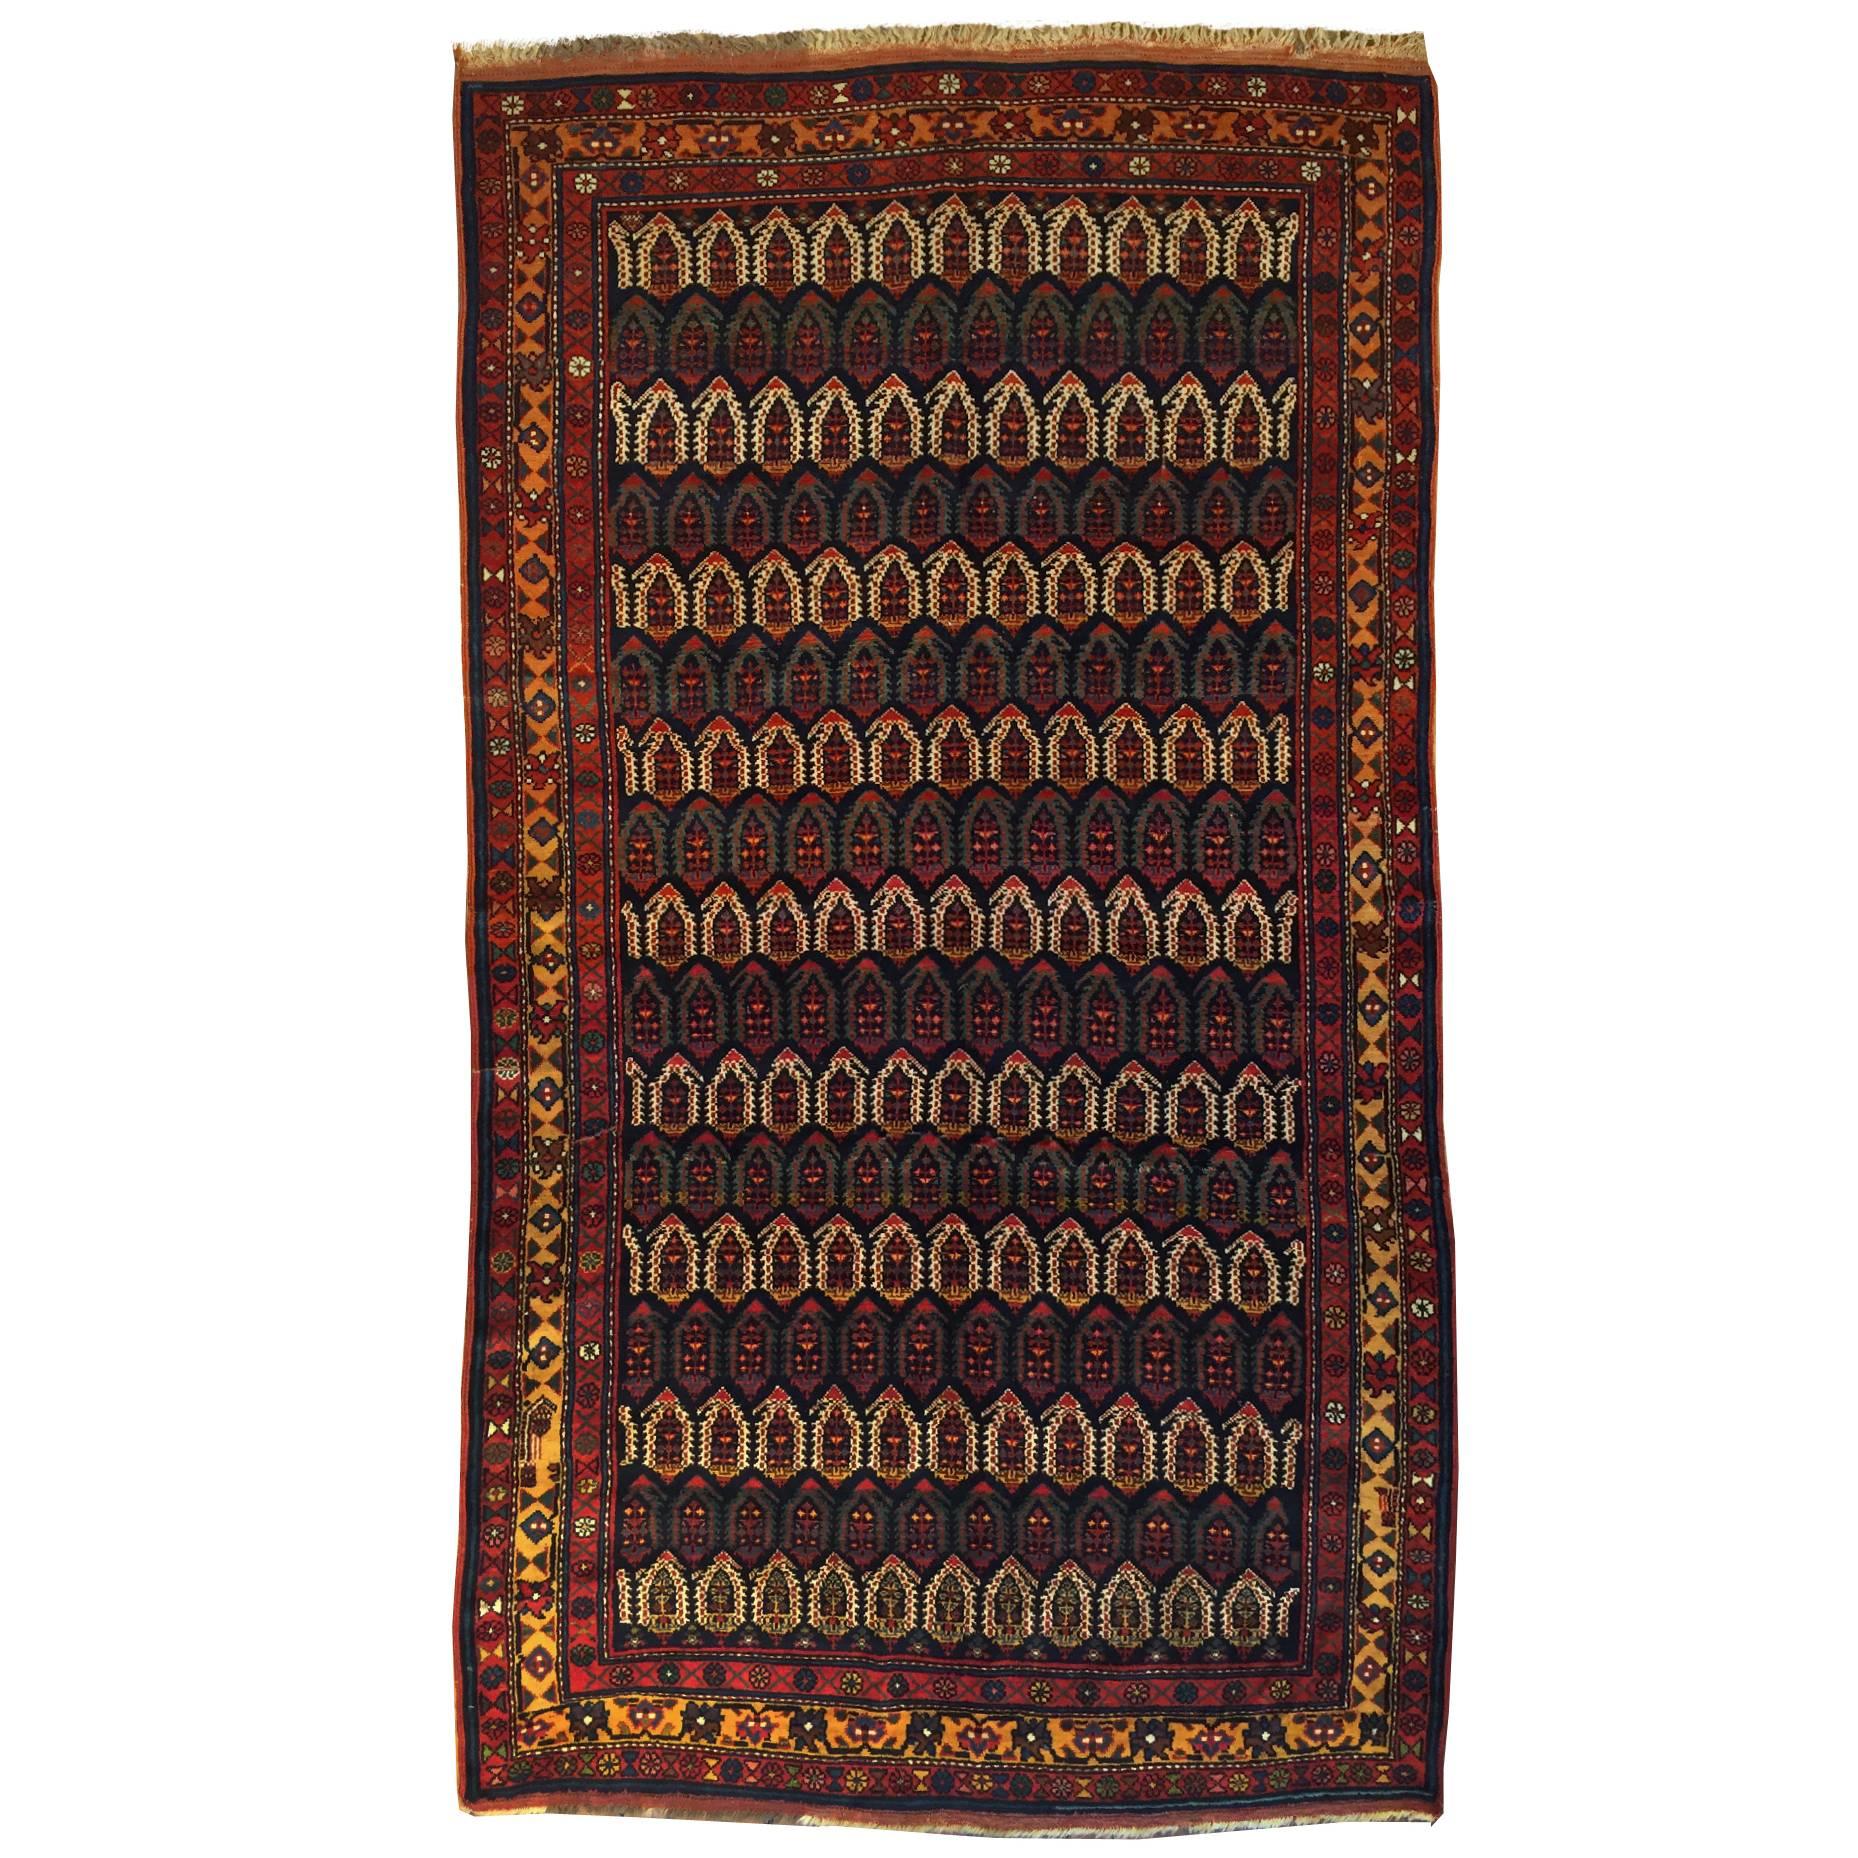 Azeri-Teppich aus dem 19. Jahrhundert